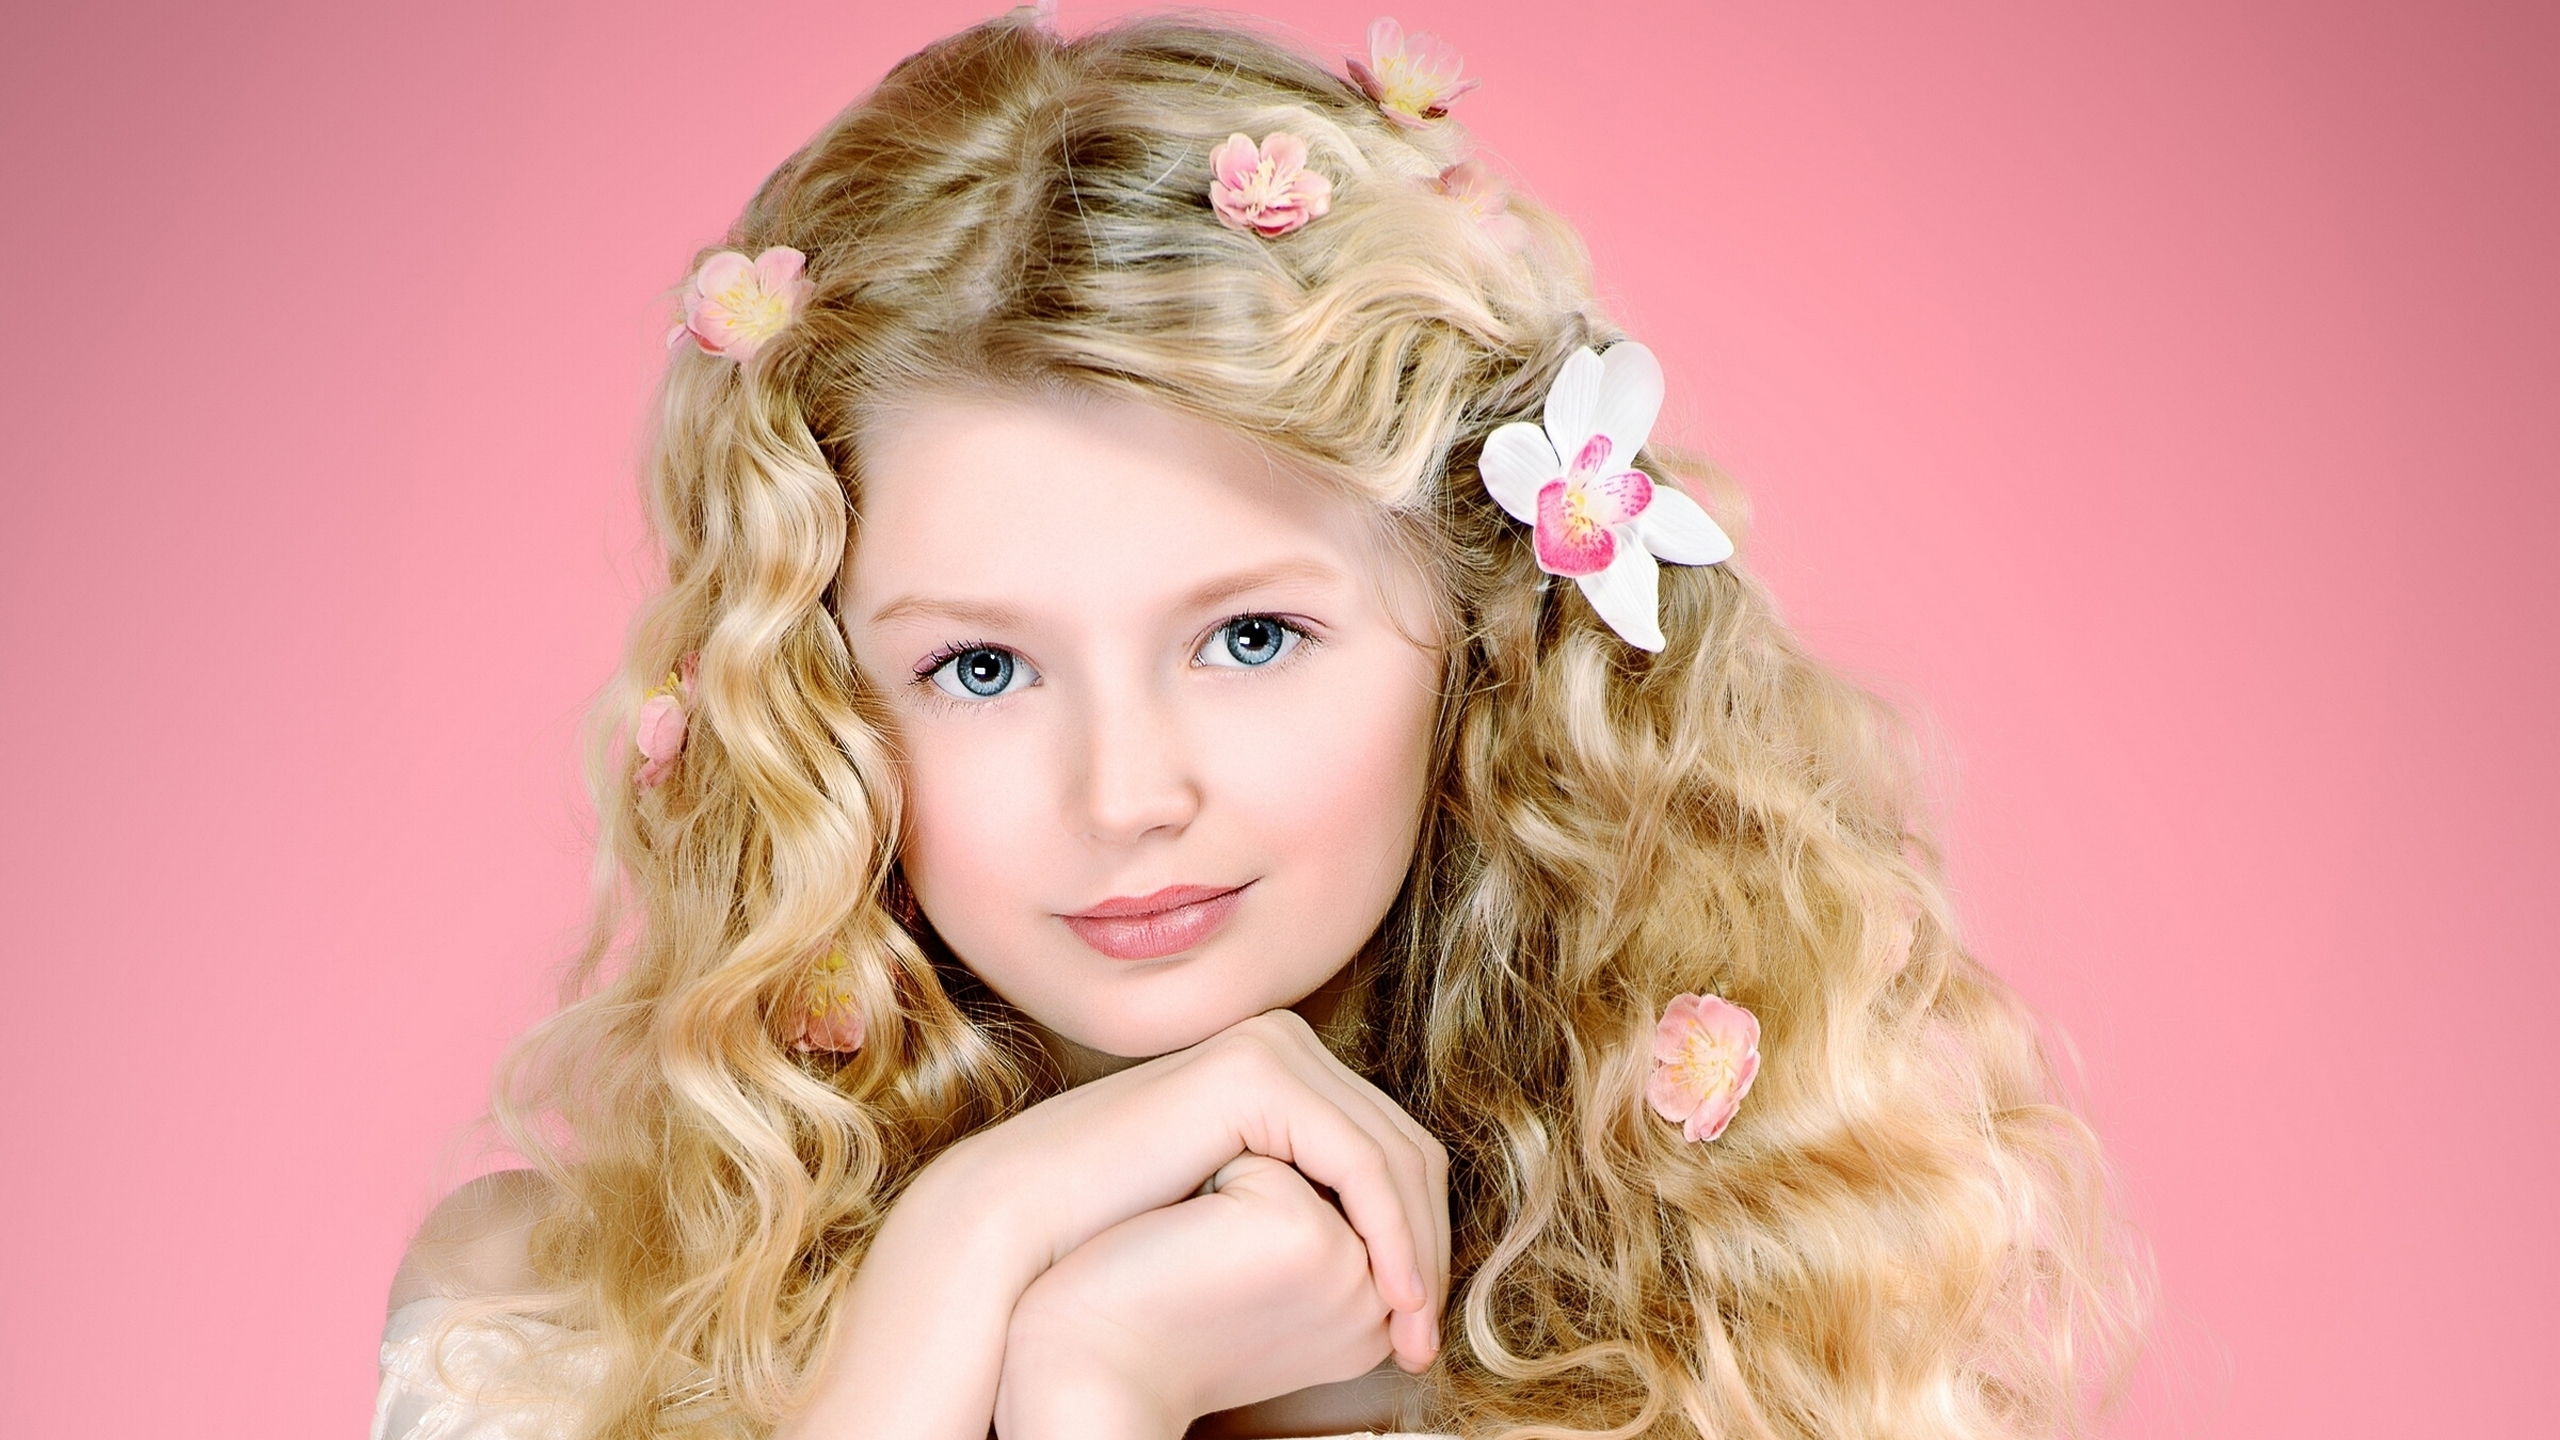 Ash Eyes Little Cute Girl Is Having Flowers On Head In Light Pink Background HD Cute